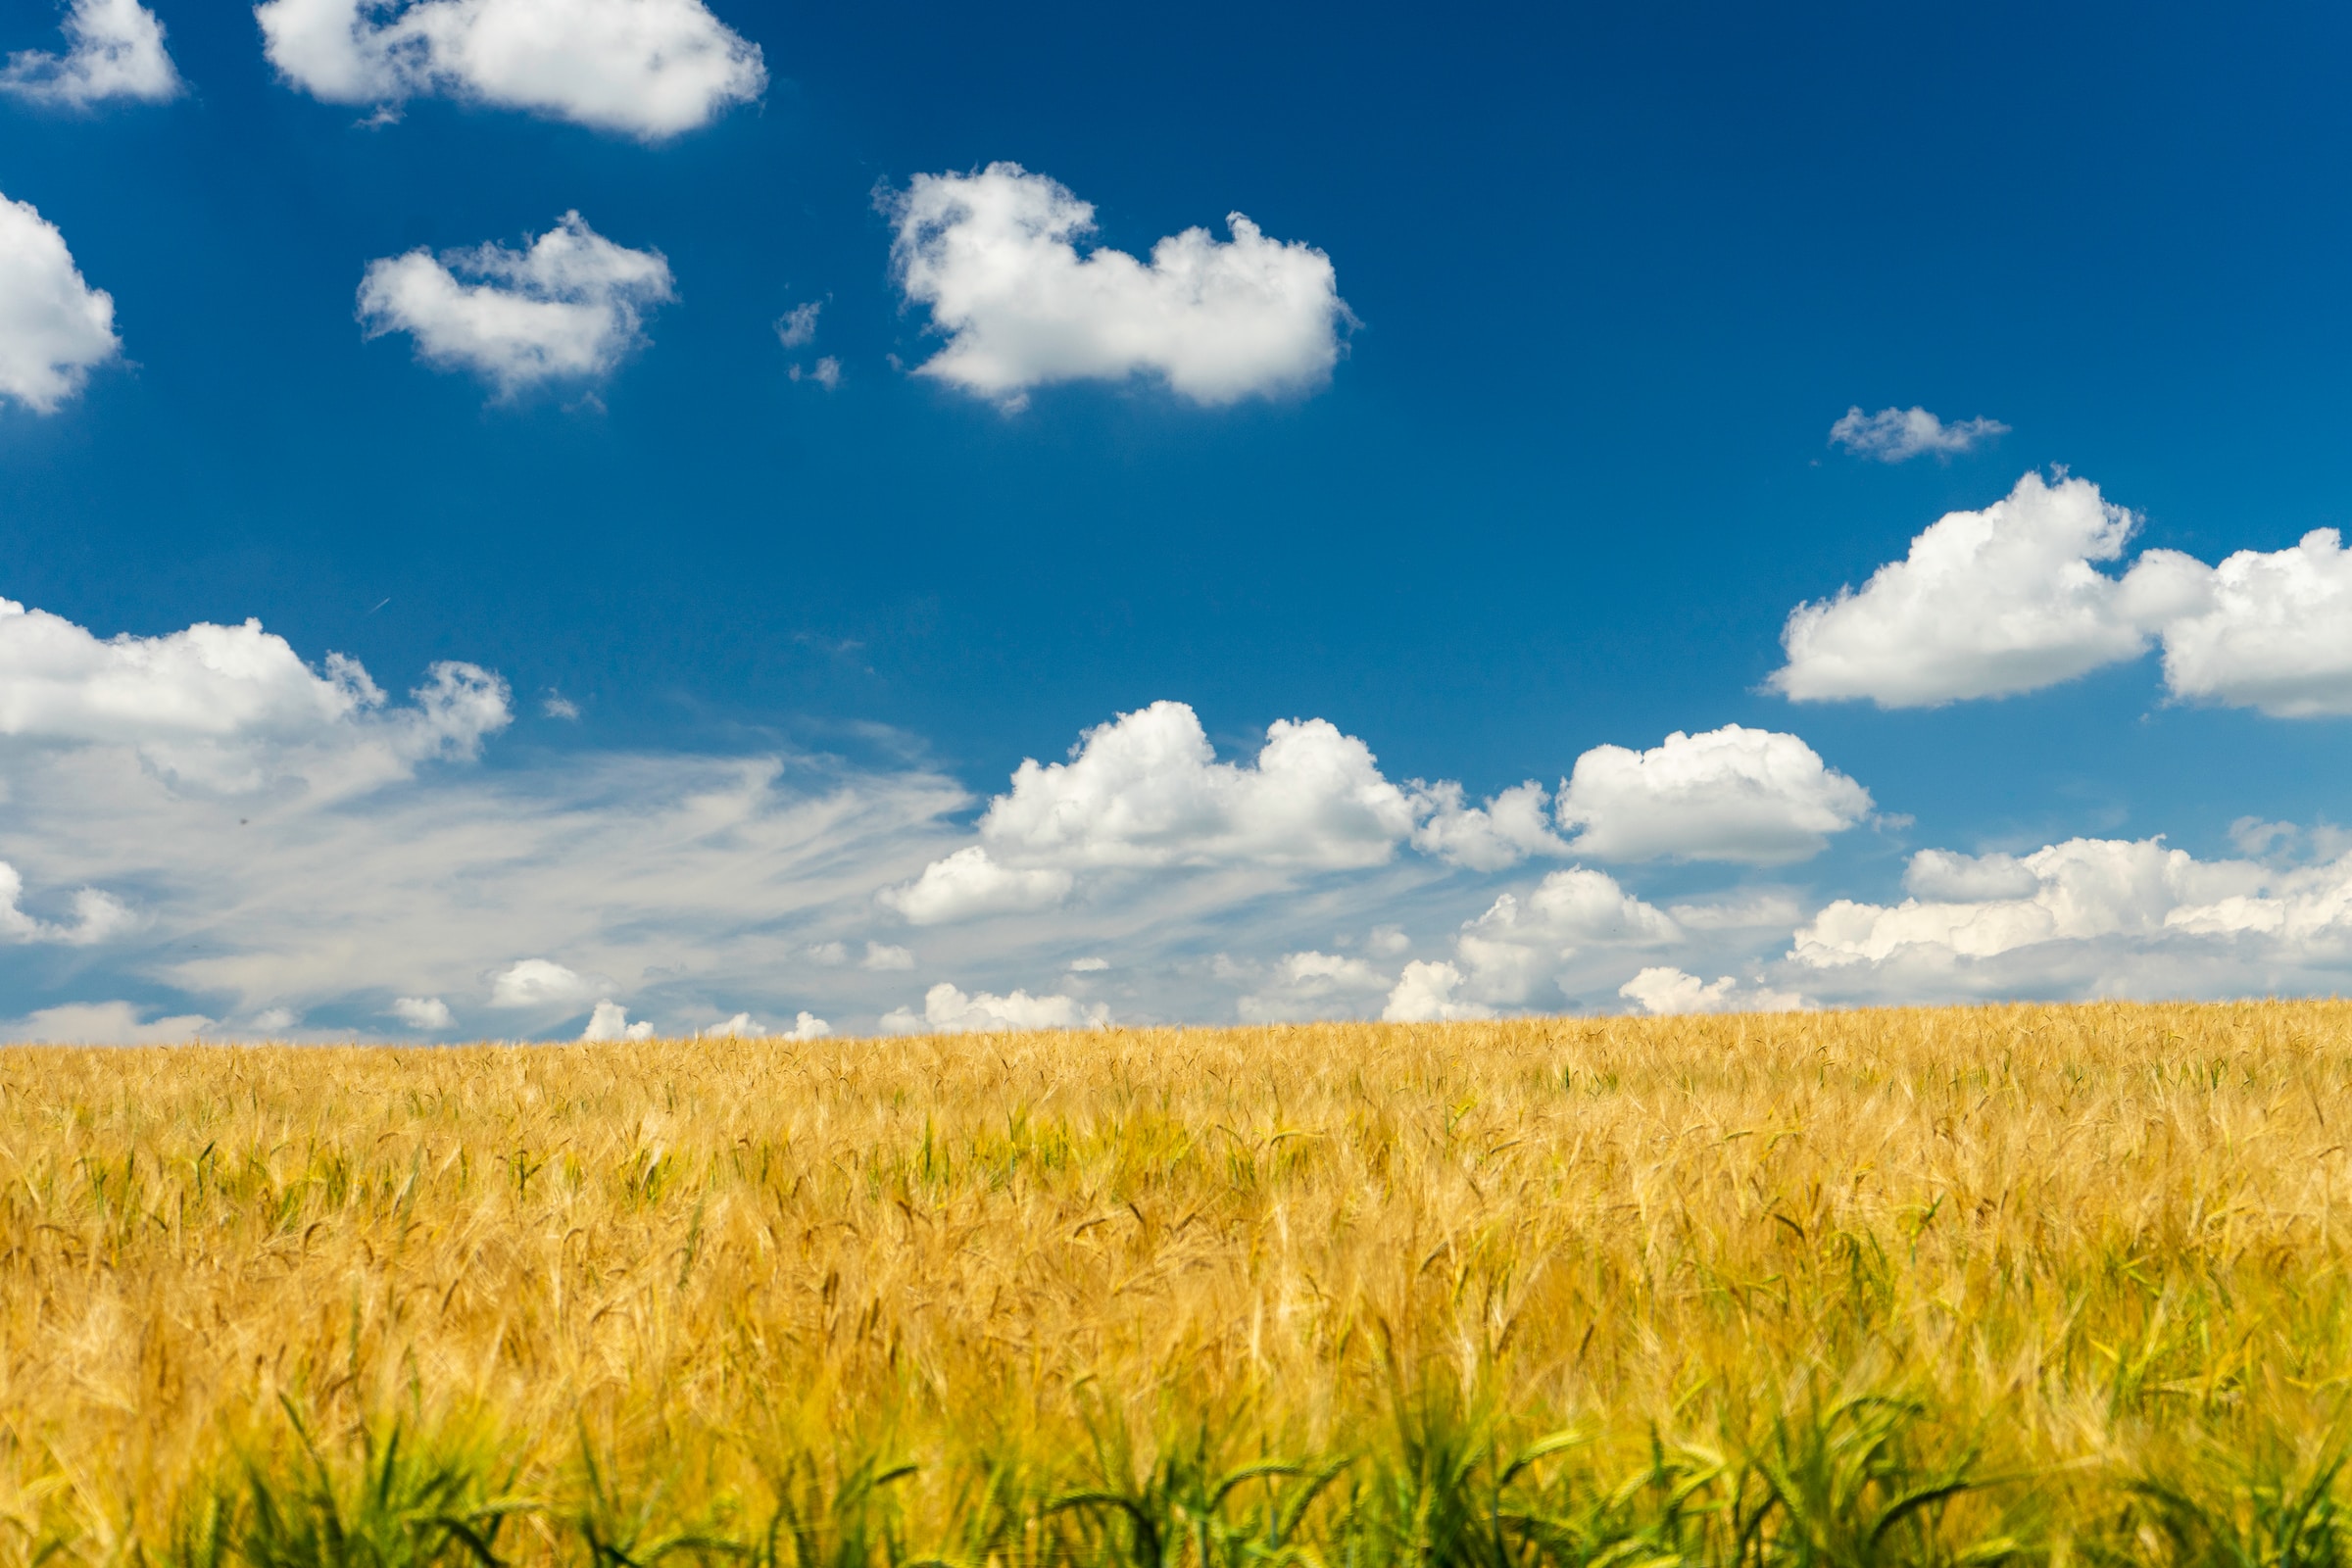 Das Getreidefeld strahlt goldgelb. Der tiefblaue Himmel wird von einigen Wolken geschmückt. Gemeinsam stellen das blau und das gelb eine typische ukrainische Aussicht dar.